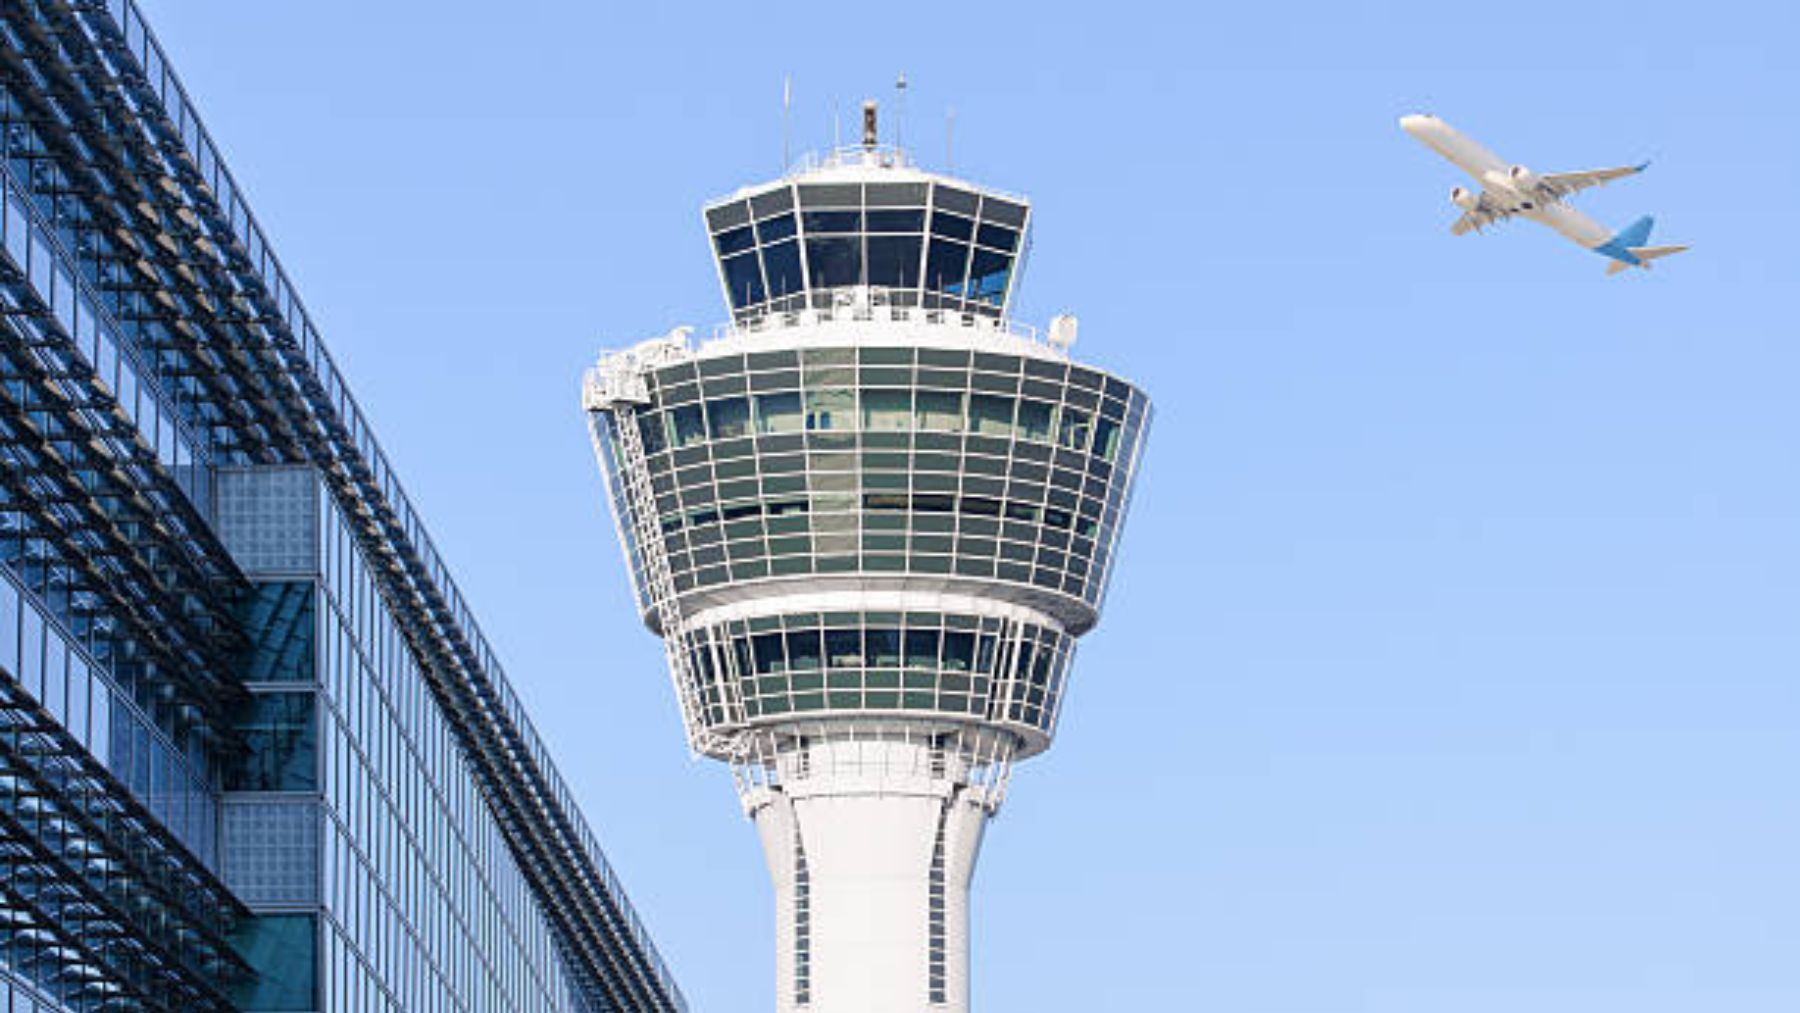 Torre de control de un aeropuerto.